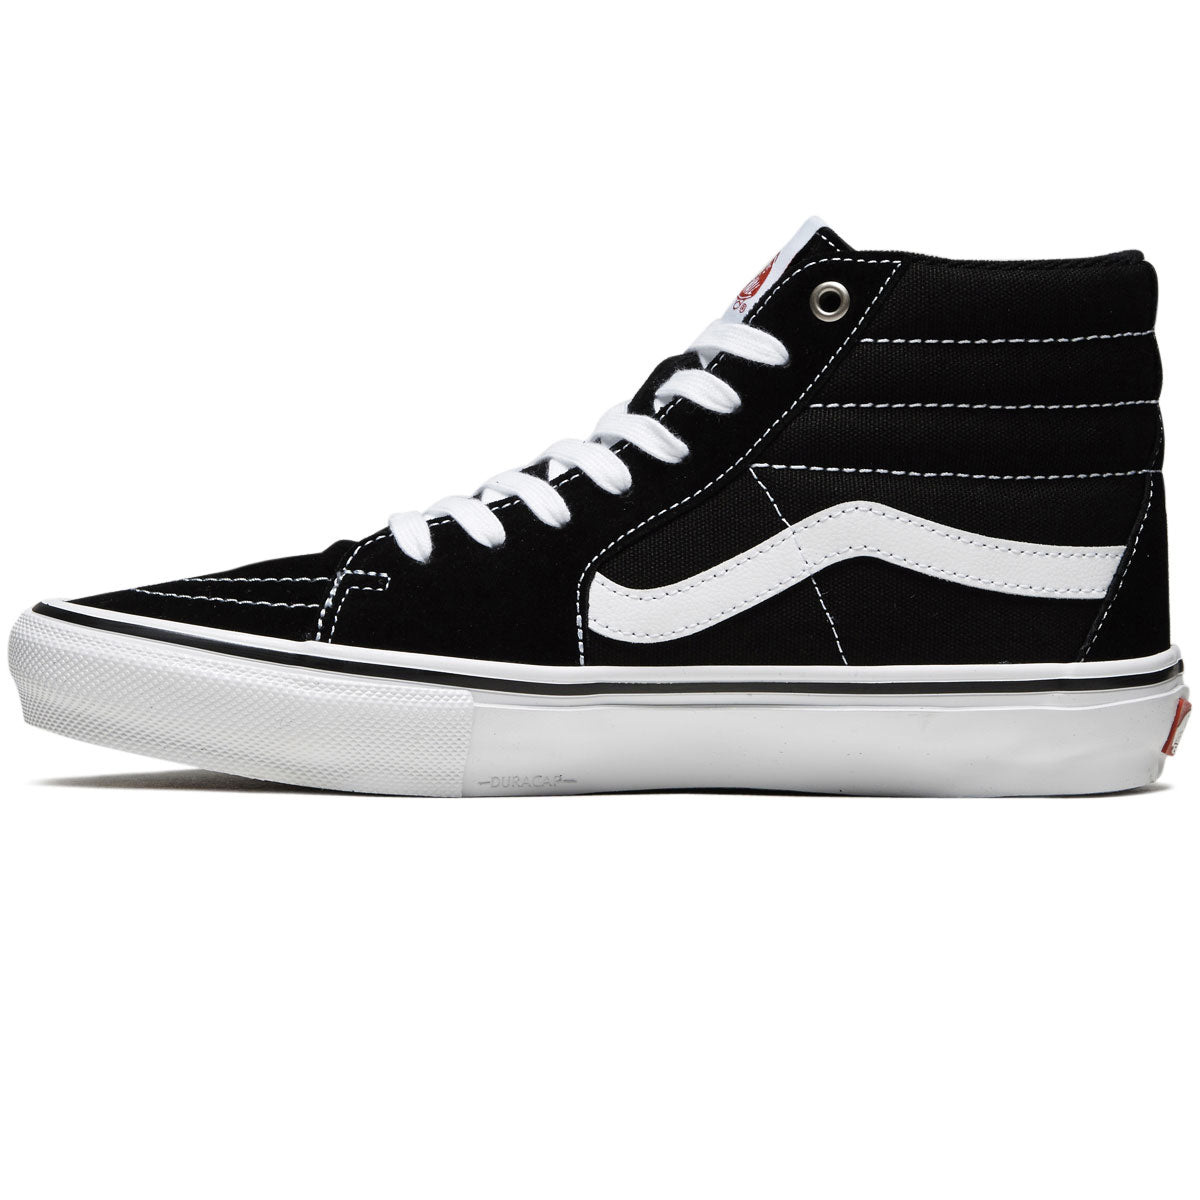 Vans Skate Sk8-hi Shoes - Black/White image 2